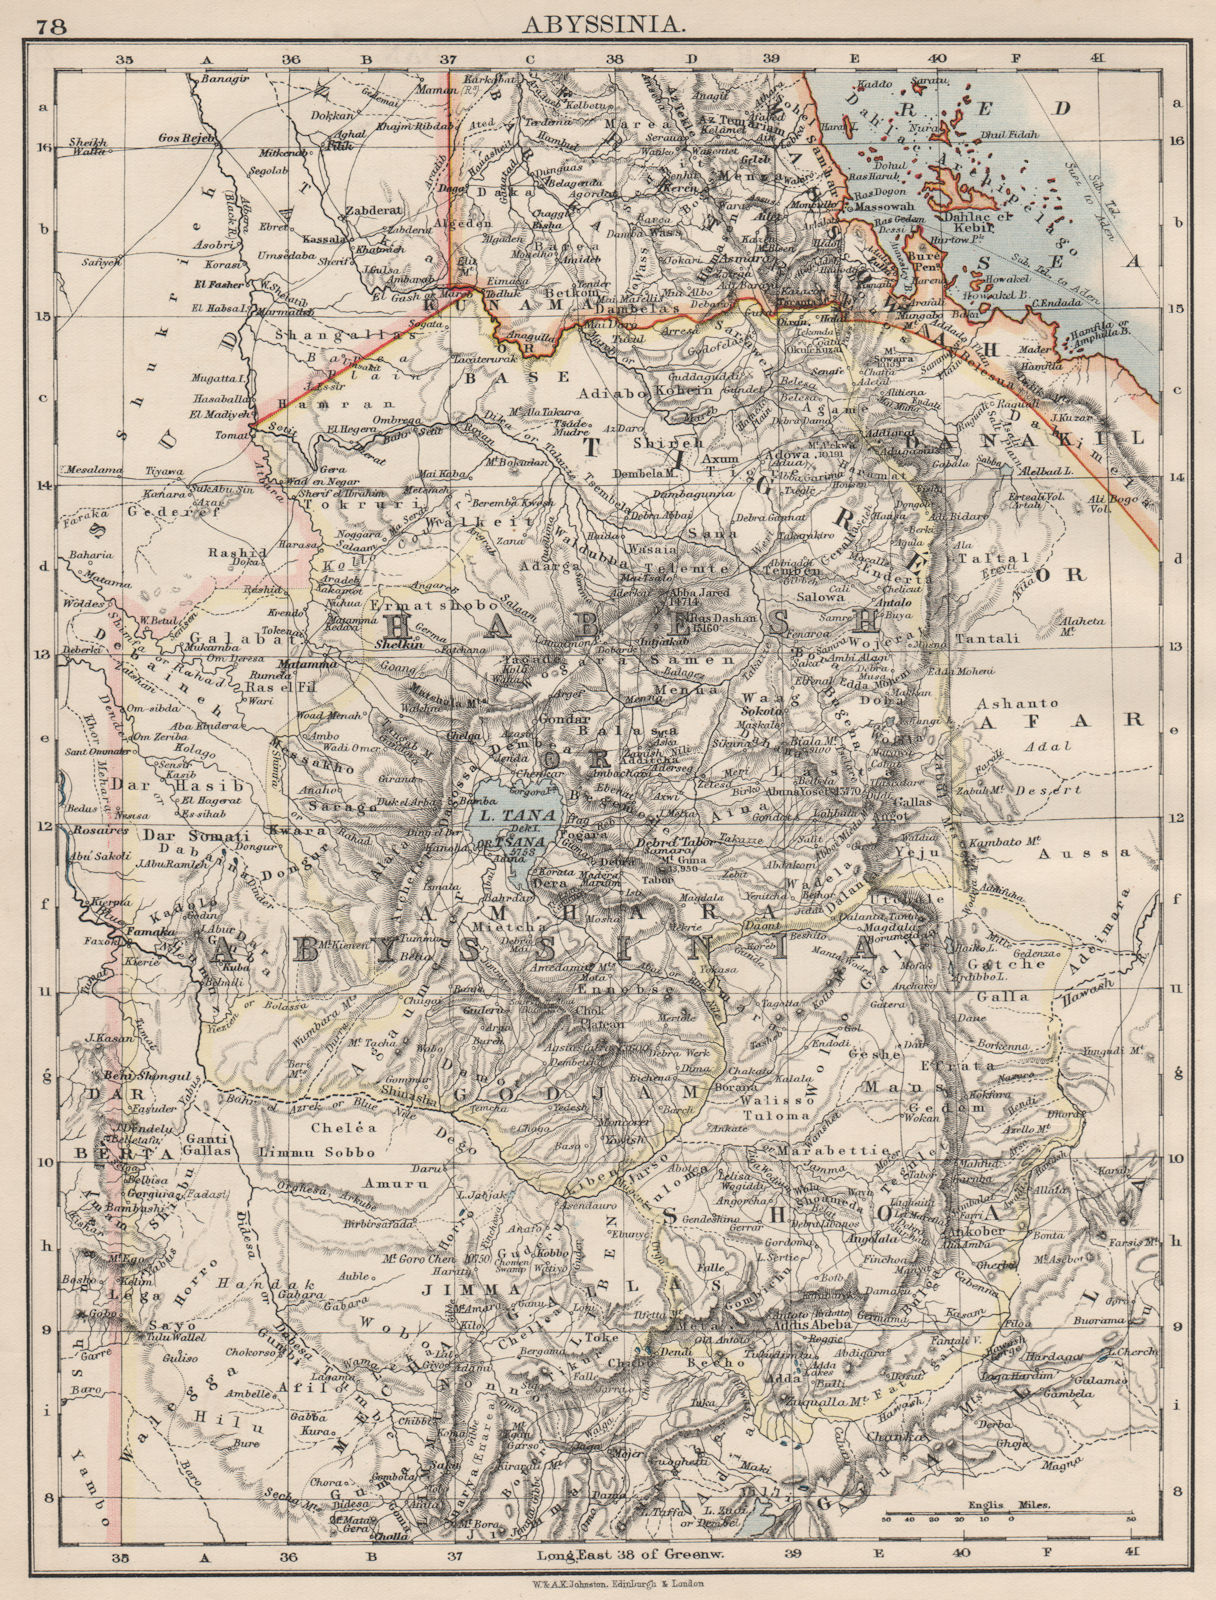 Associate Product HABESH or ABYSSINIA. Tigre Amhara Shoa Godjam. Ethiopia. JOHNSTON 1900 old map